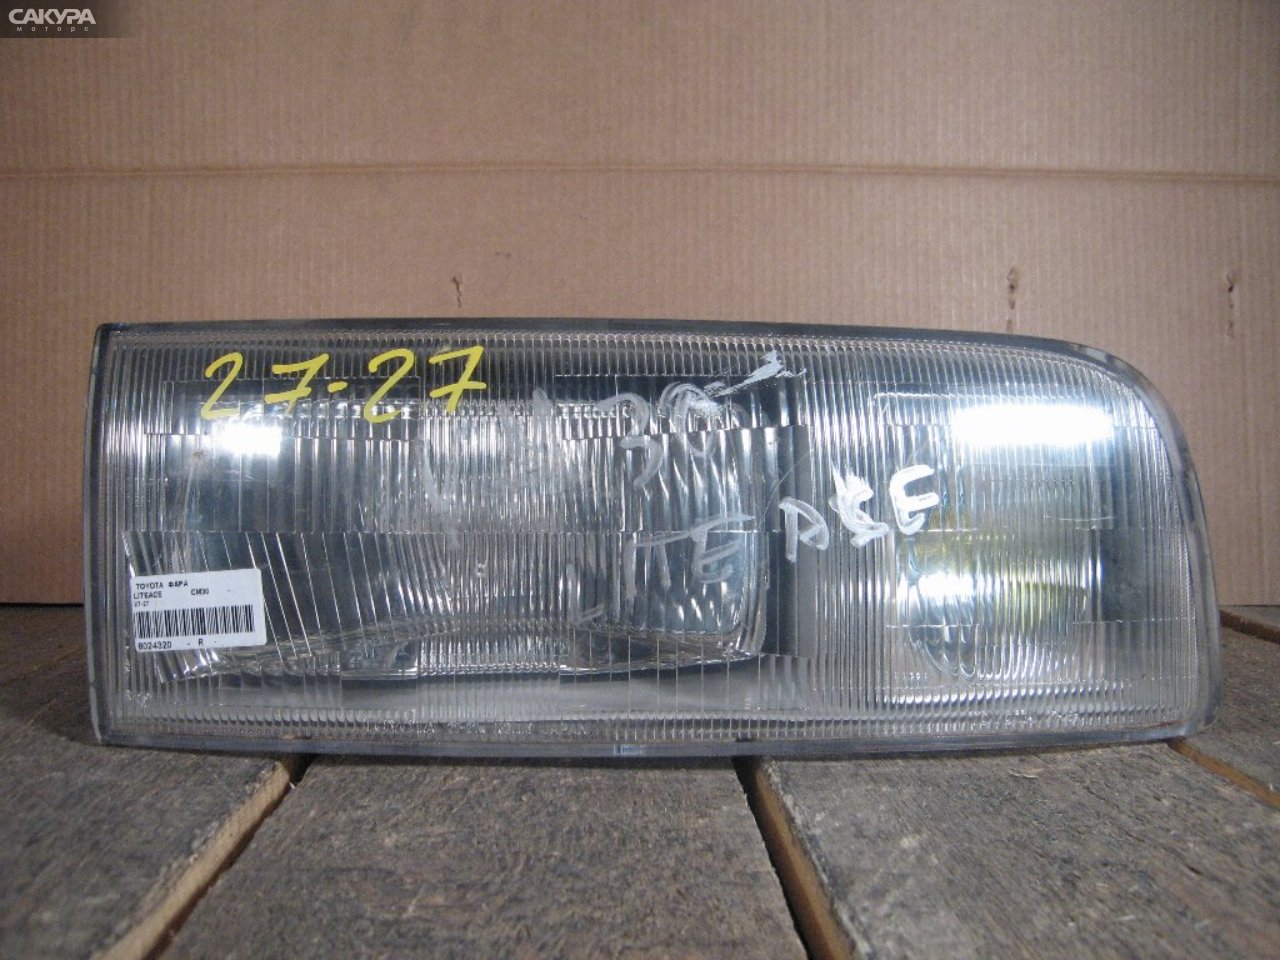 Фара правая Toyota Liteace CM30G 27-27: купить в Сакура Абакан.